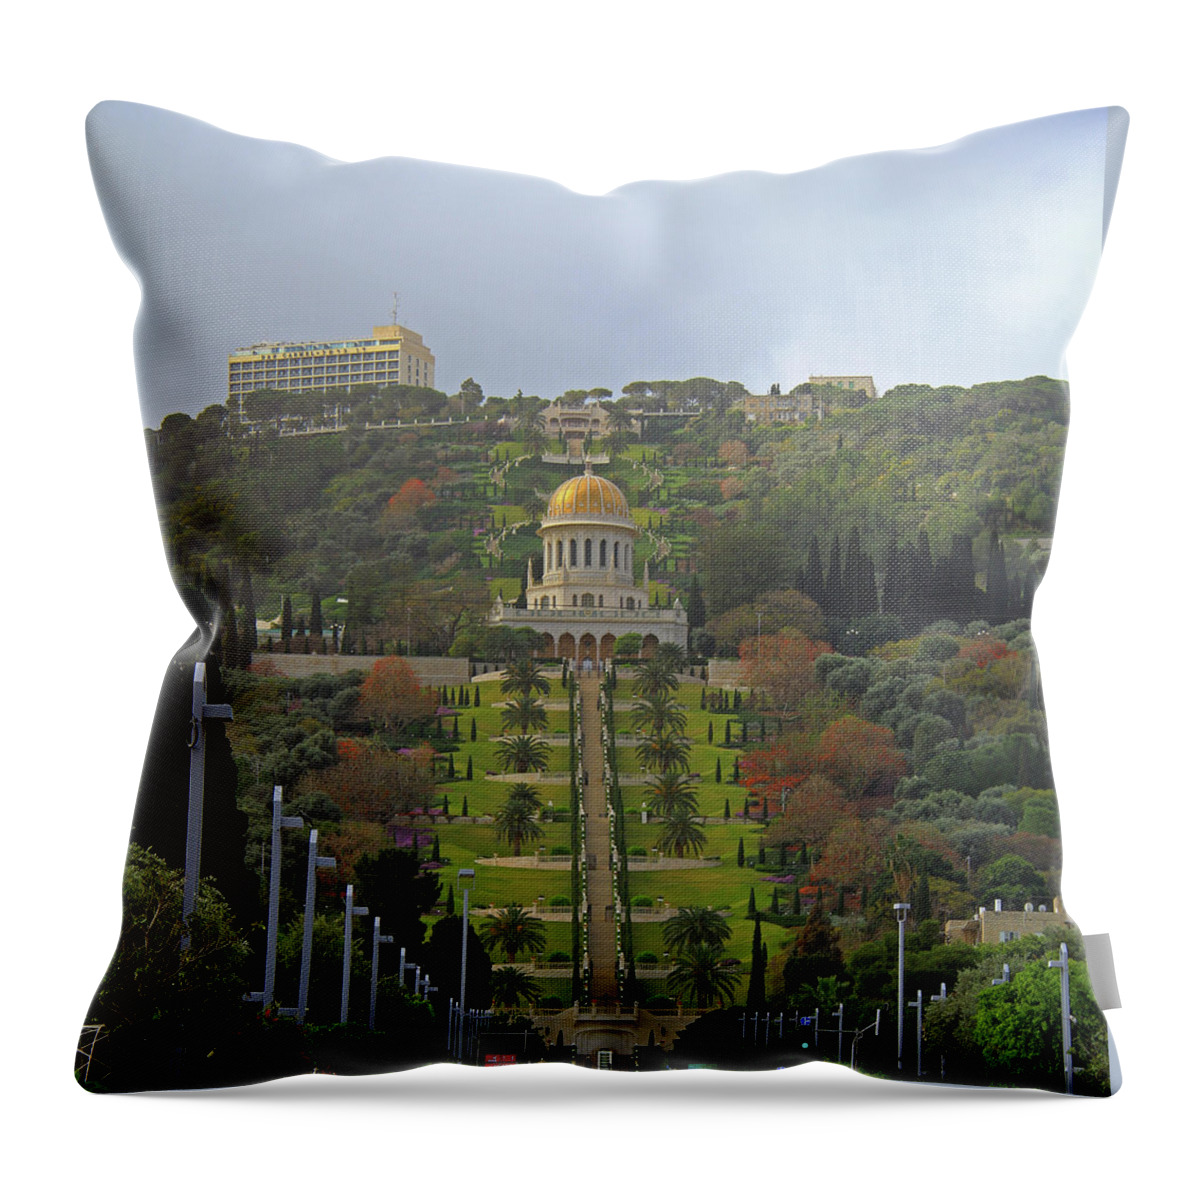 Bahai Throw Pillow featuring the photograph Bahai Gardens and Temple - Haifa, Israel by Richard Krebs